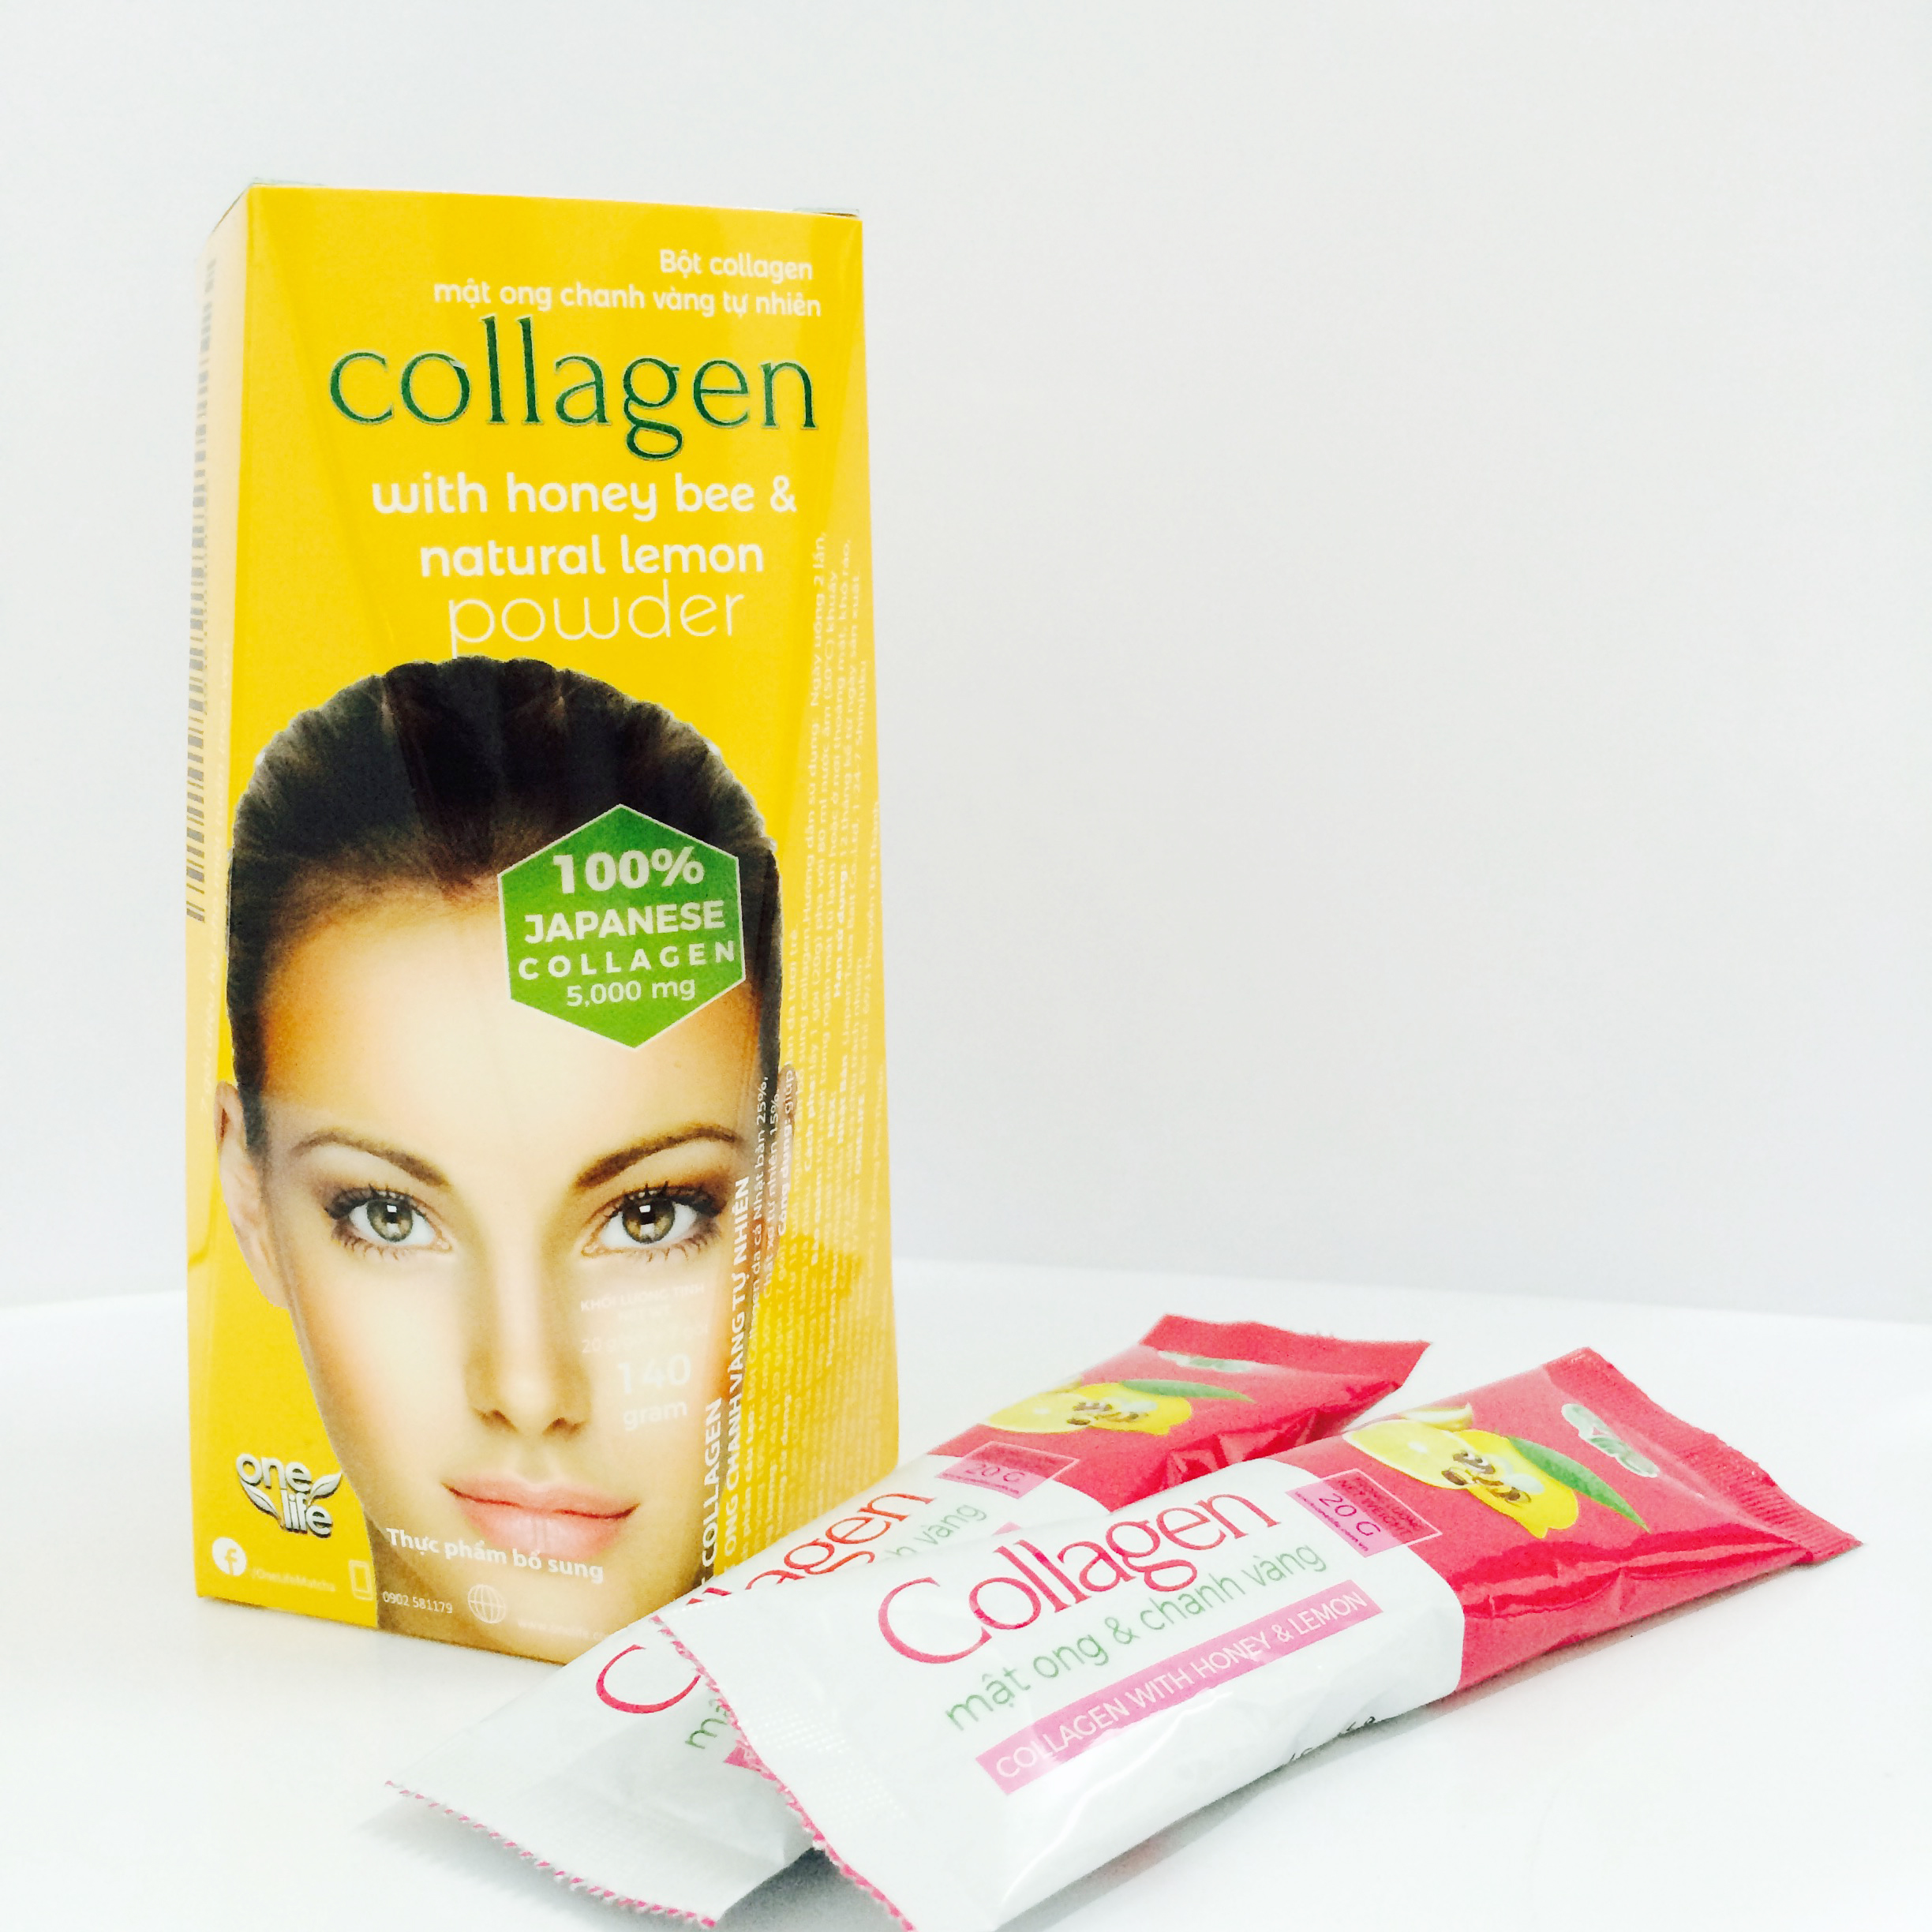 Thực Phẩm Bổ sung Collagen Mật Ong Chanh Vàng Tự Nhiên OneLife (100% Bột collagen Cá Nhật Bản) – Hộp 7 gói x 20gr/gói